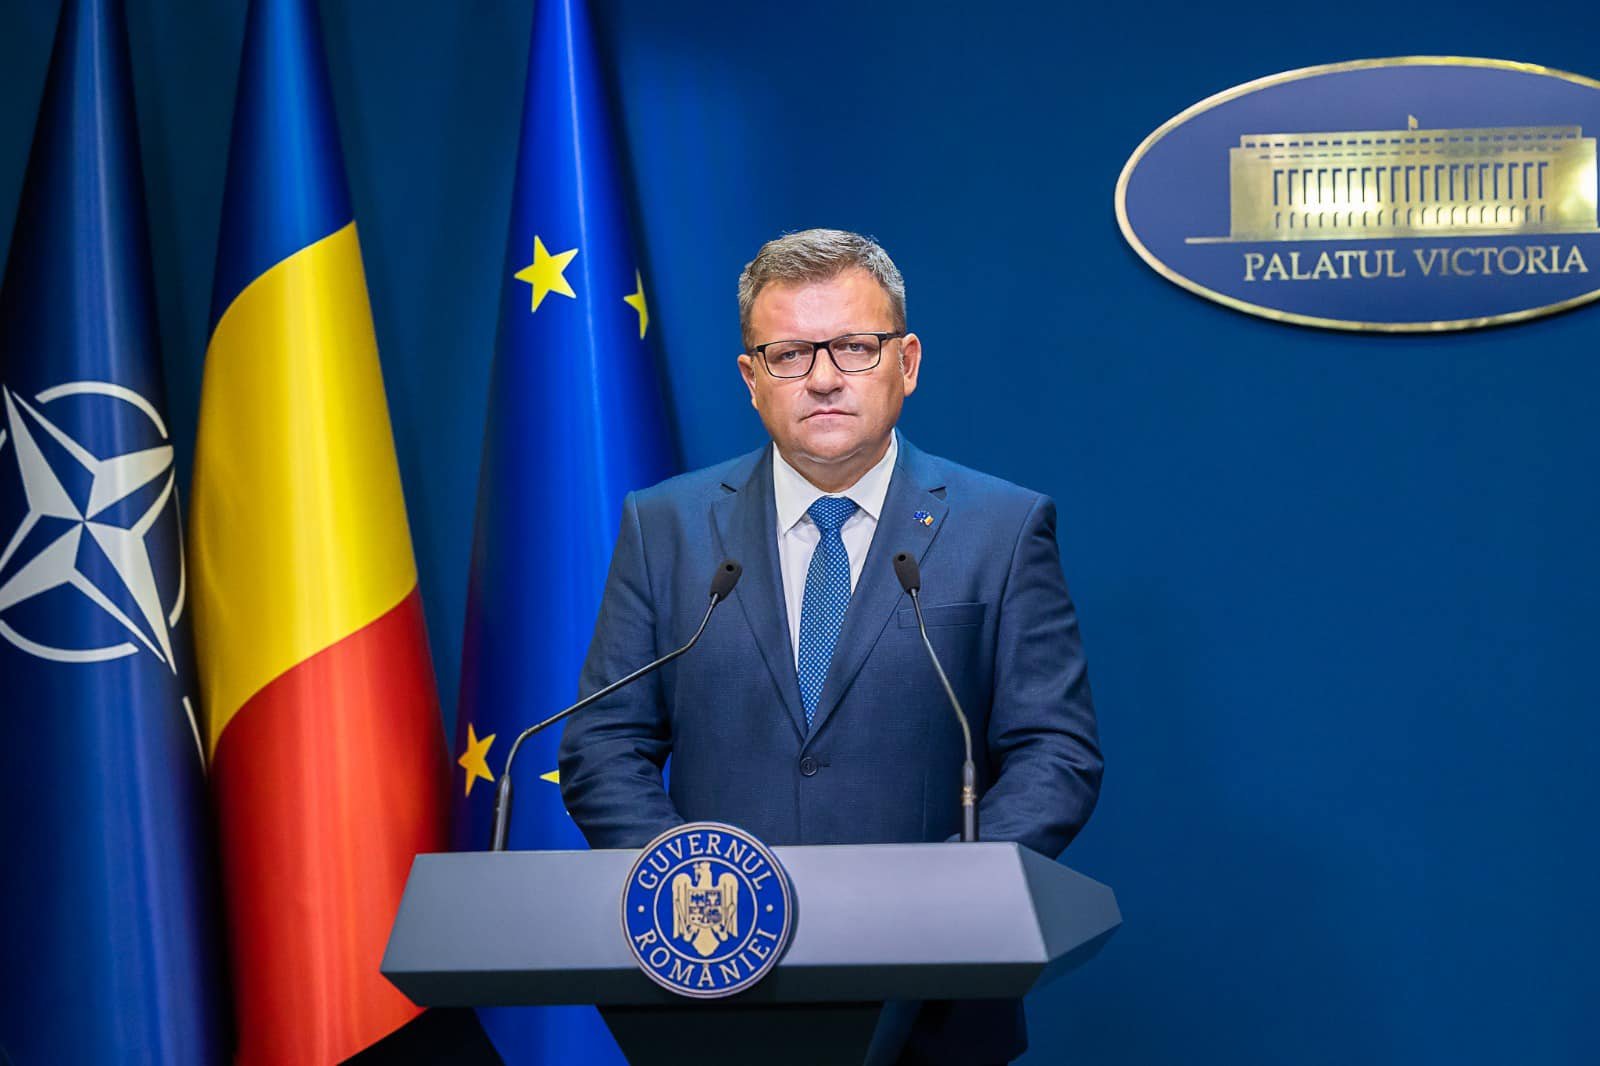  Eșec al vizitei lui Budăi la Comisia Europeană, unde a cerut refacerea PNRR. Mai multe țări au depus noi programe, Bruxelles-ul le-a aprobat. România n-a trimis noua variantă